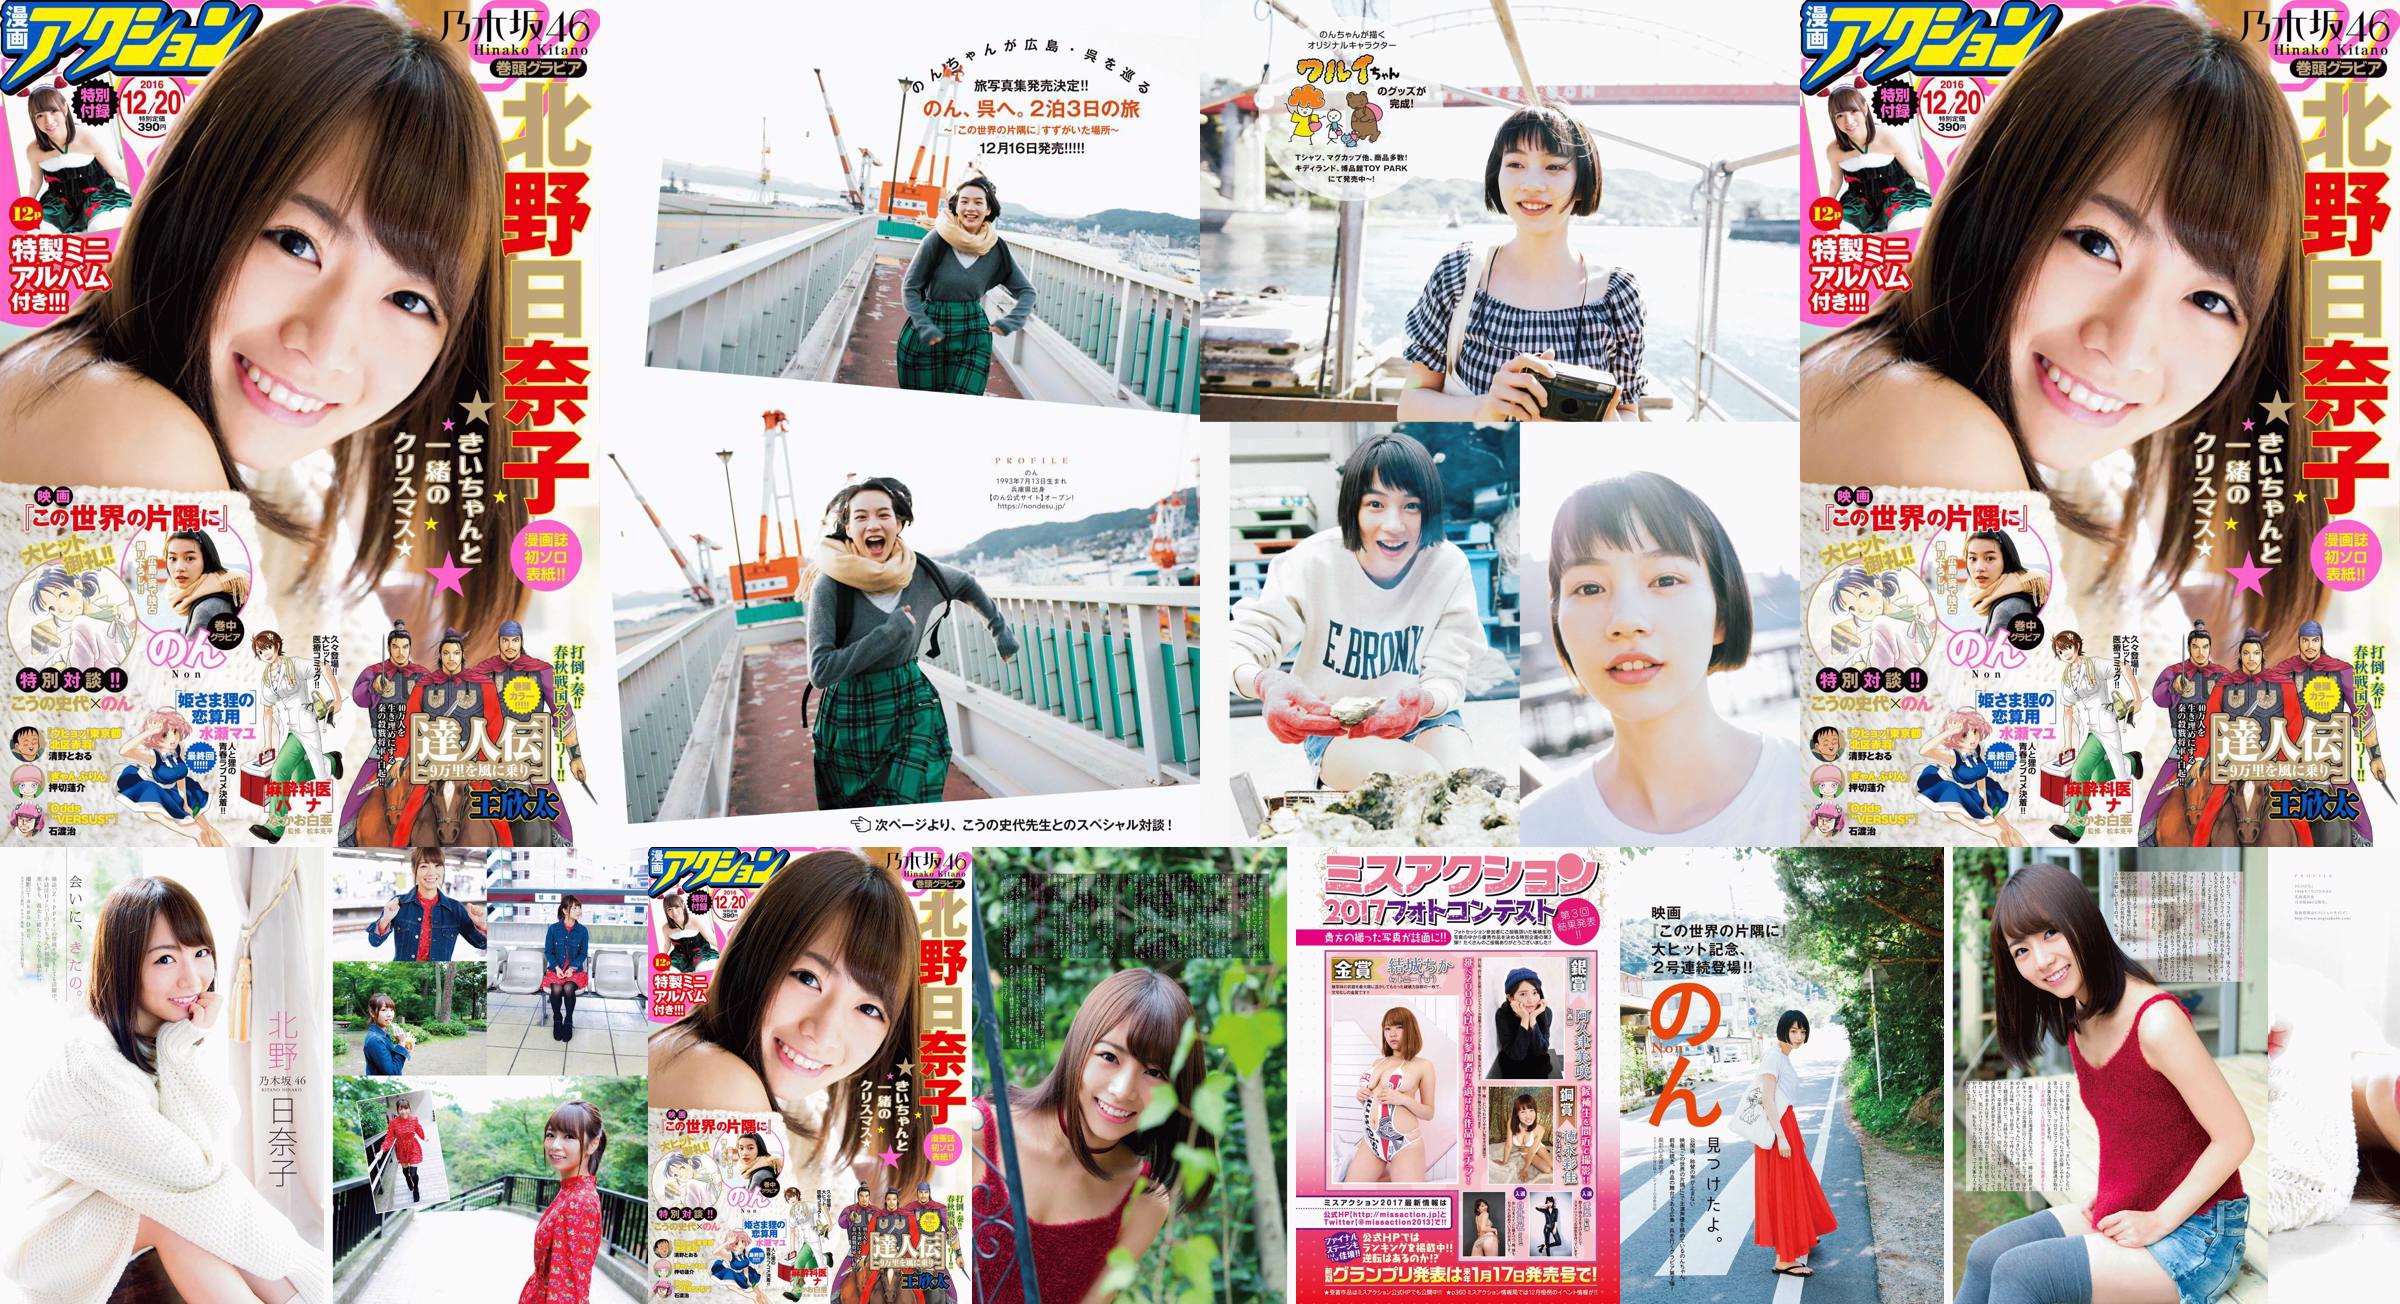 [Manga Action] Kitano Hinako のん 2016 No.24 Photo Magazine No.109690 Page 5